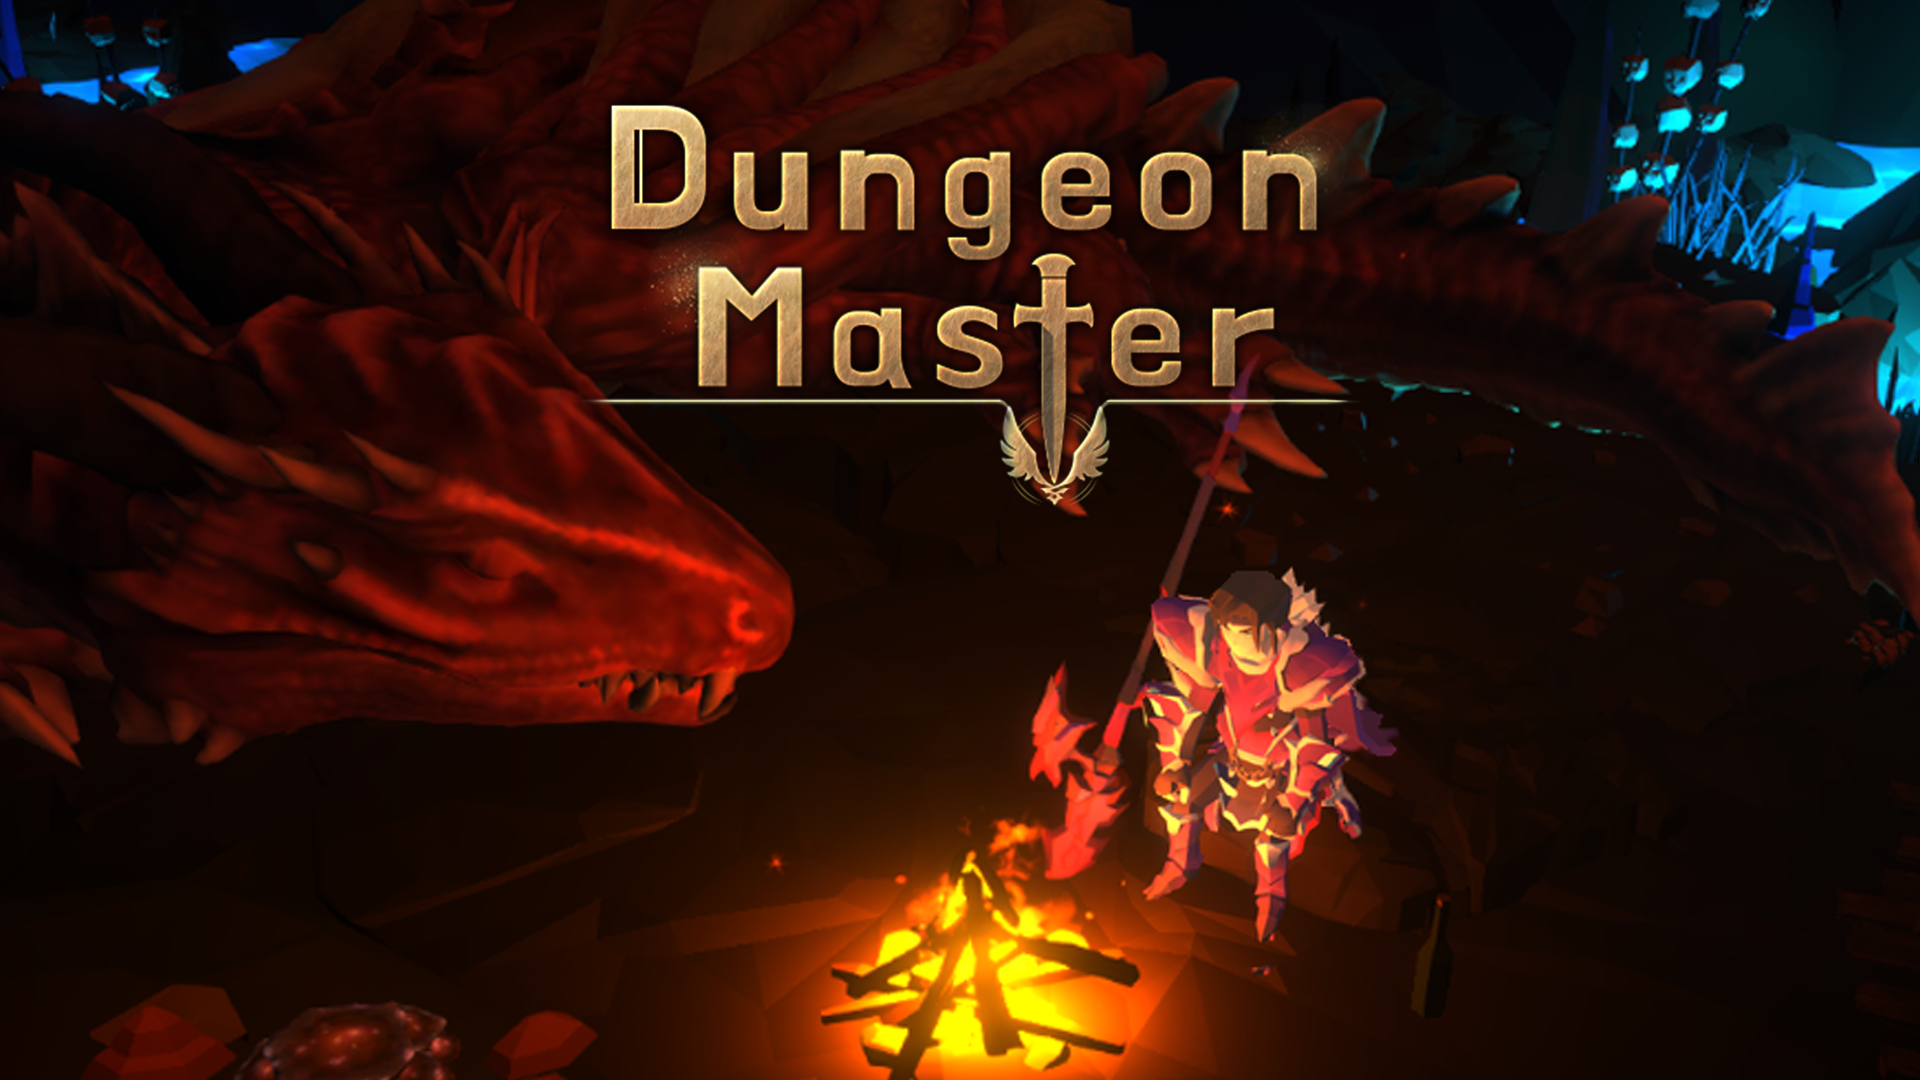 Screenshot 1 of Dungeon Master: juego de rol inactivo 1.3.08